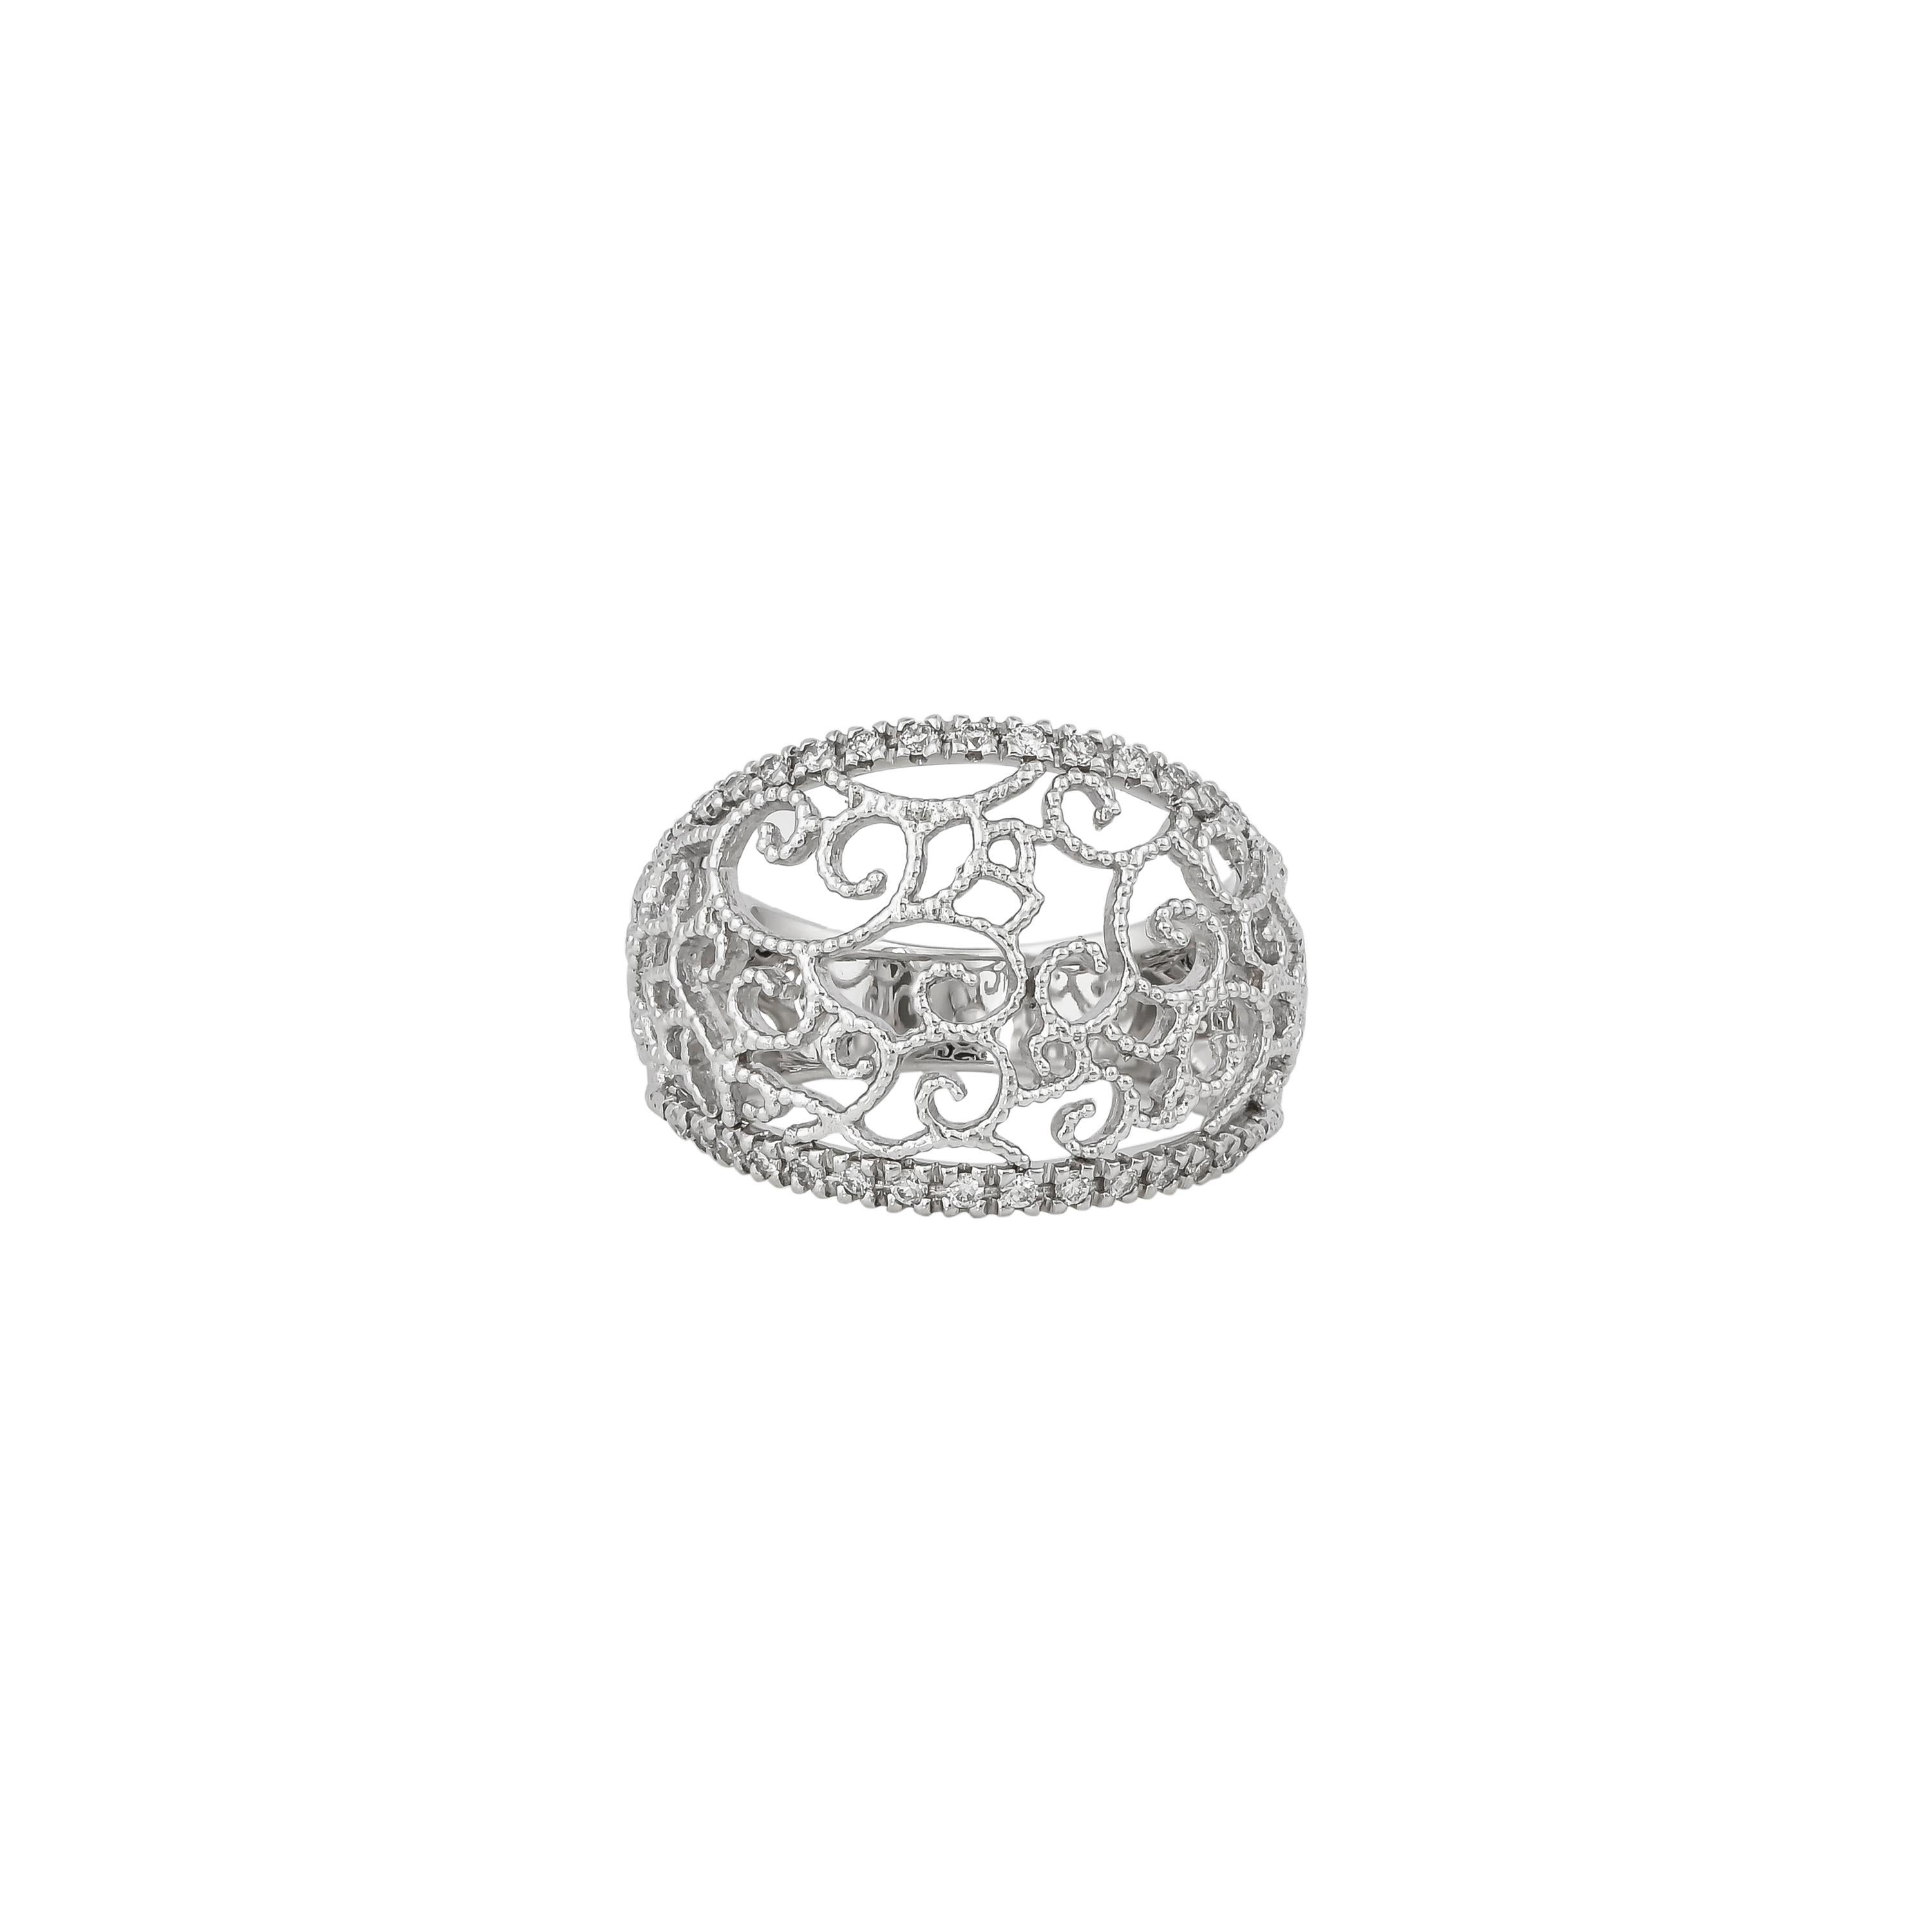 0.304 Carat Diamond Ring in 18 Karat White Gold For Sale